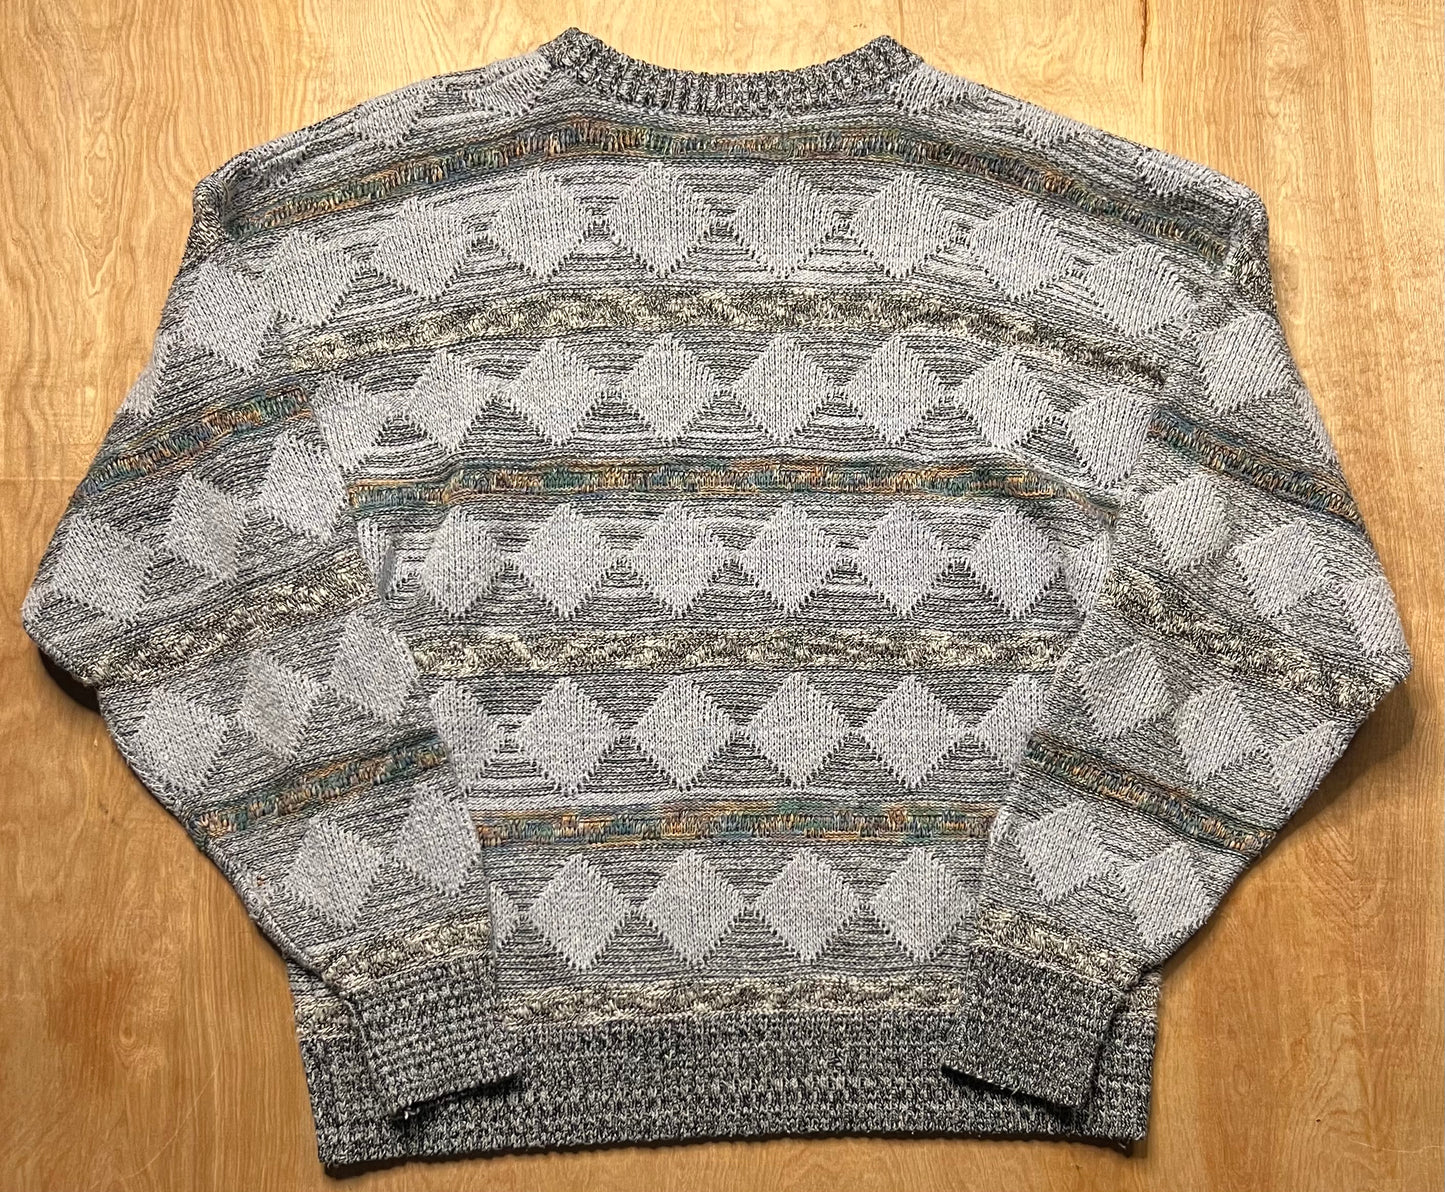 1990's Private Club Heavy Sweater